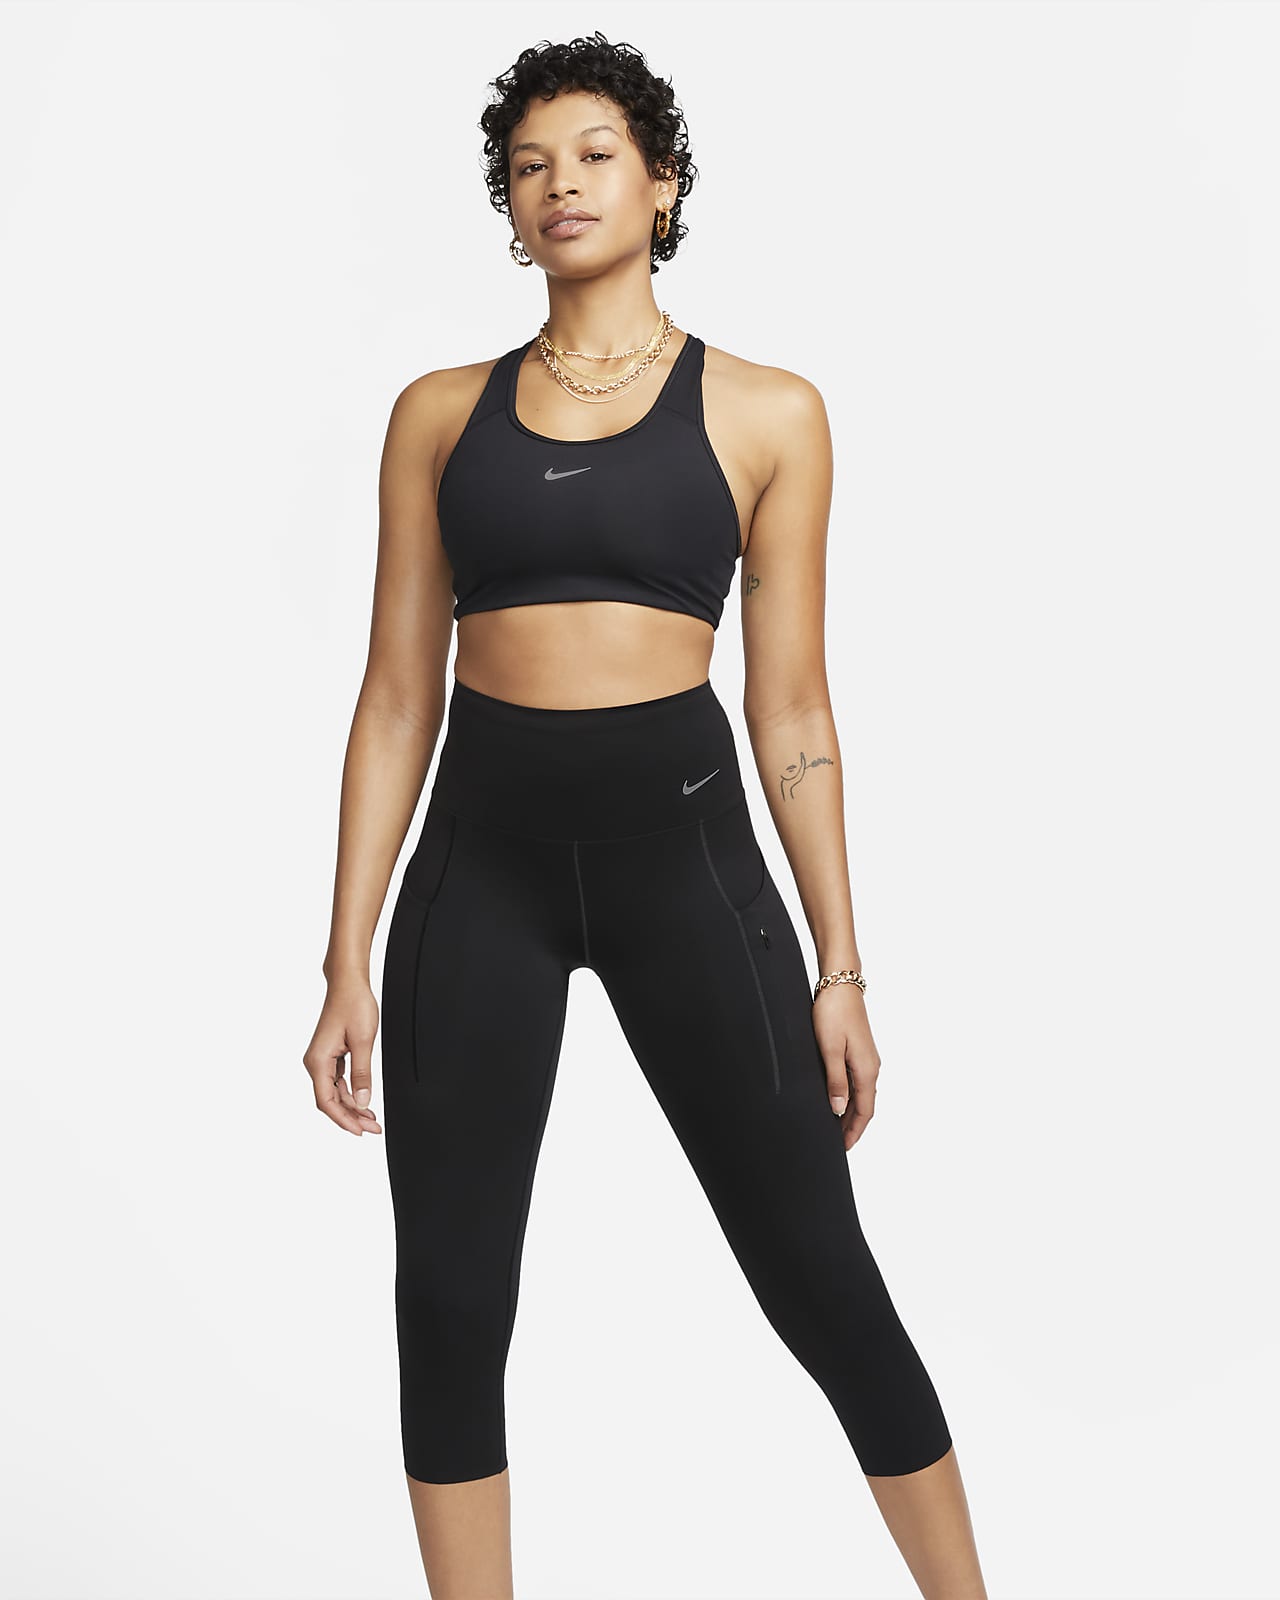 Kortare leggings Nike Go med hög midja, fickor och fast stöd för kvinnor